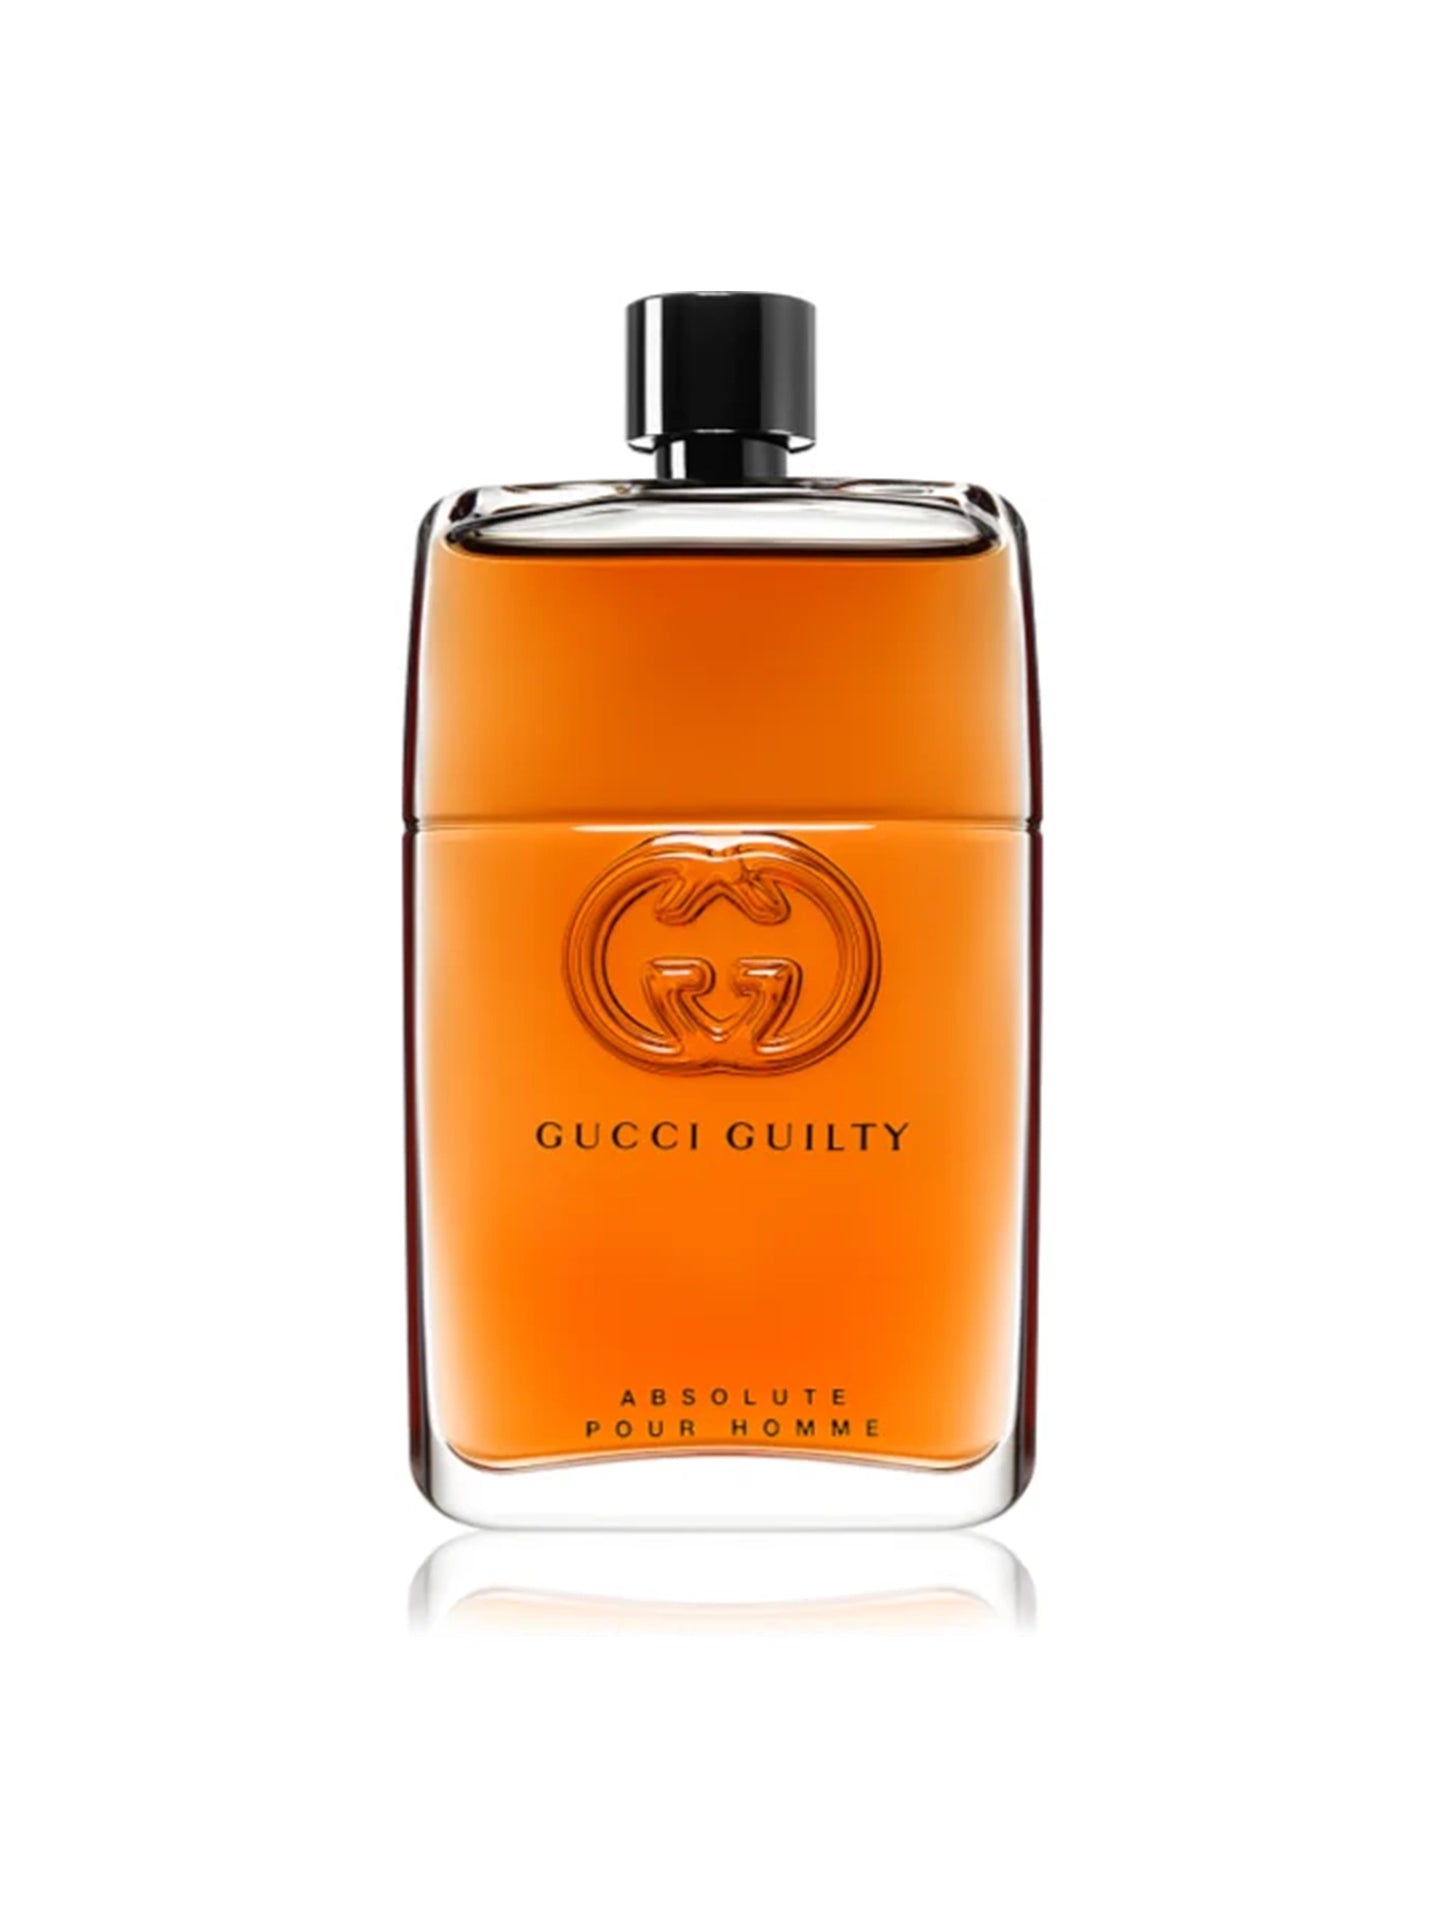 Gucci - Guilty Absolute Pour Homme Probe PROBEDÜFTE.DE